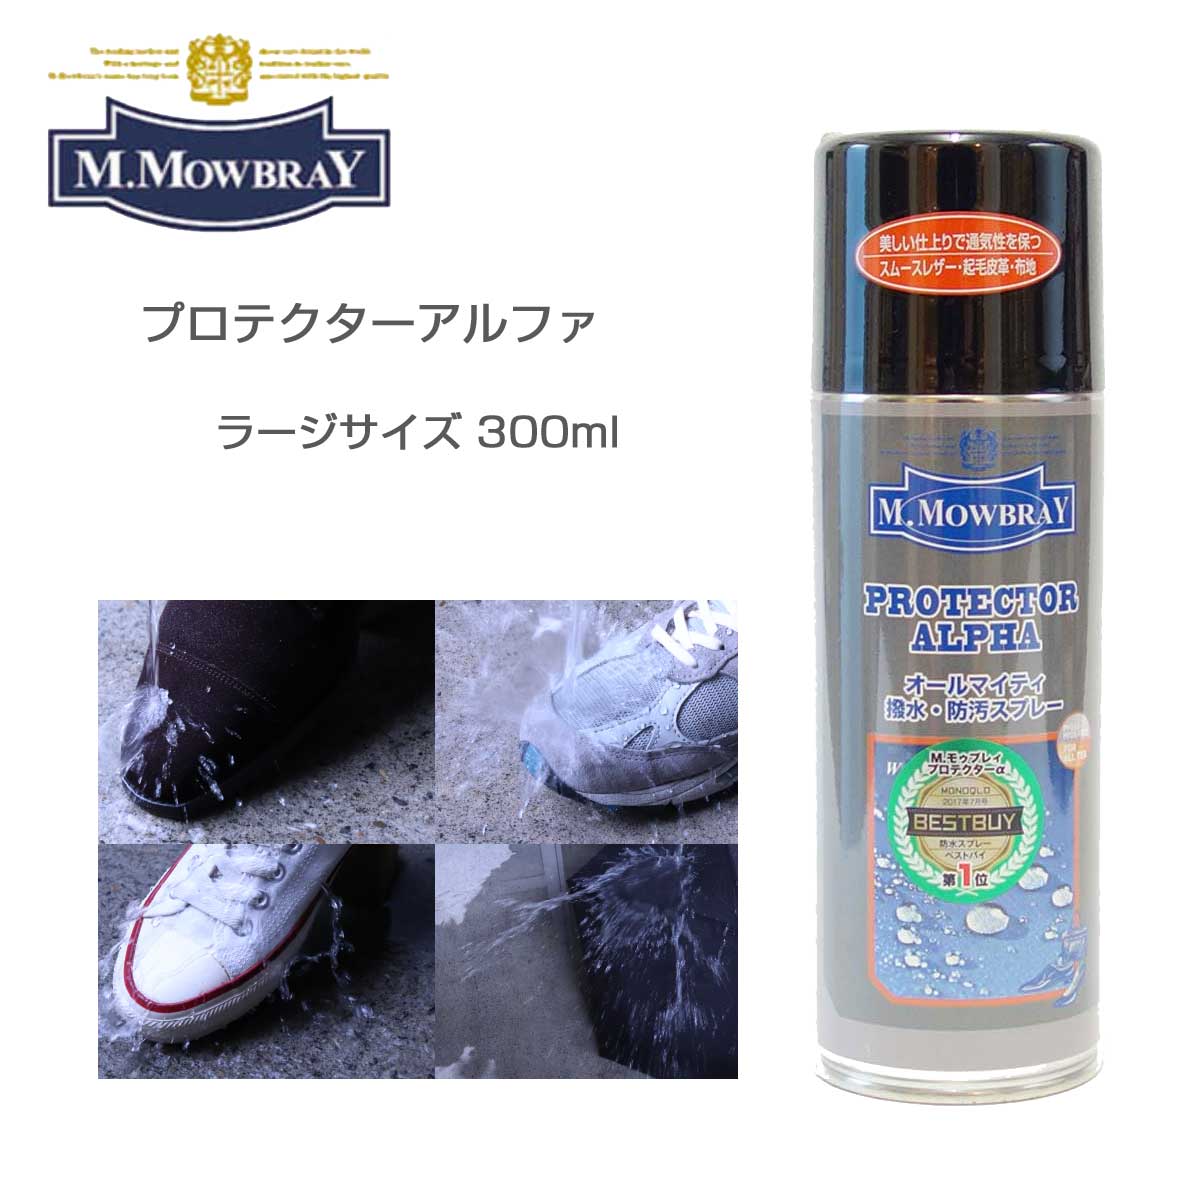 M.MOWBRAY M.モゥブレィ プロテクターアルファ ラージ（300ml） オールマイティな靴・バッグ用撥水・防汚スプレー モウブレイ R&D 日本製 梅雨対策対象商品 靴の防水スプレー 撥水スプレー